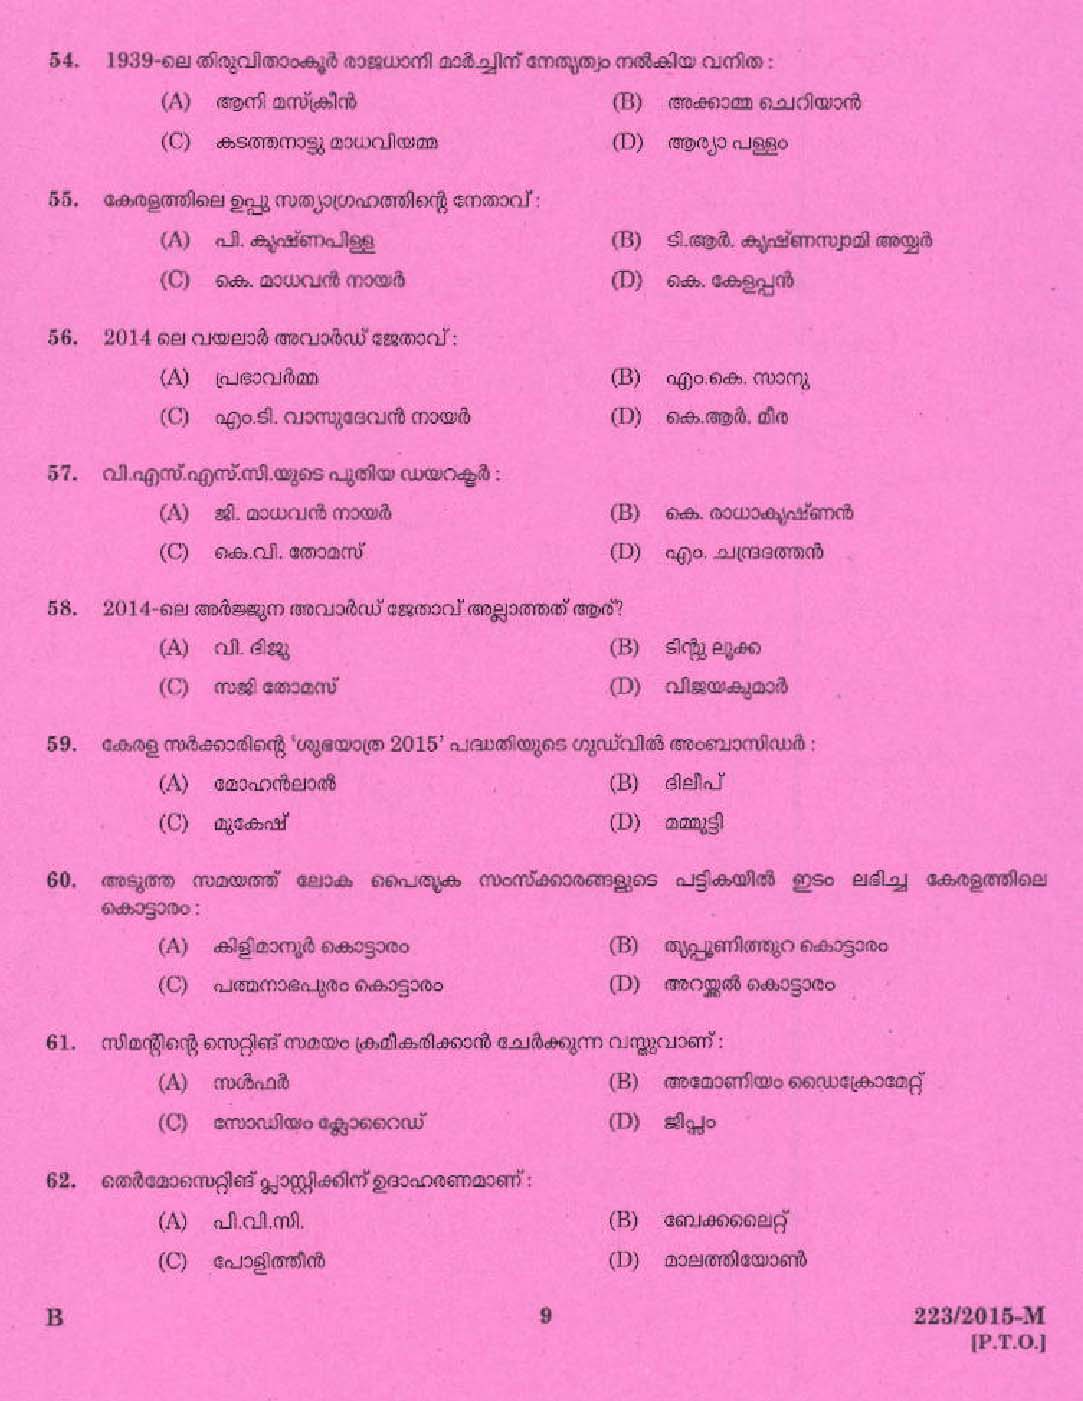 Kerala PSC Boat Driver Exam 2015 Question Paper Code 2232015 M 7